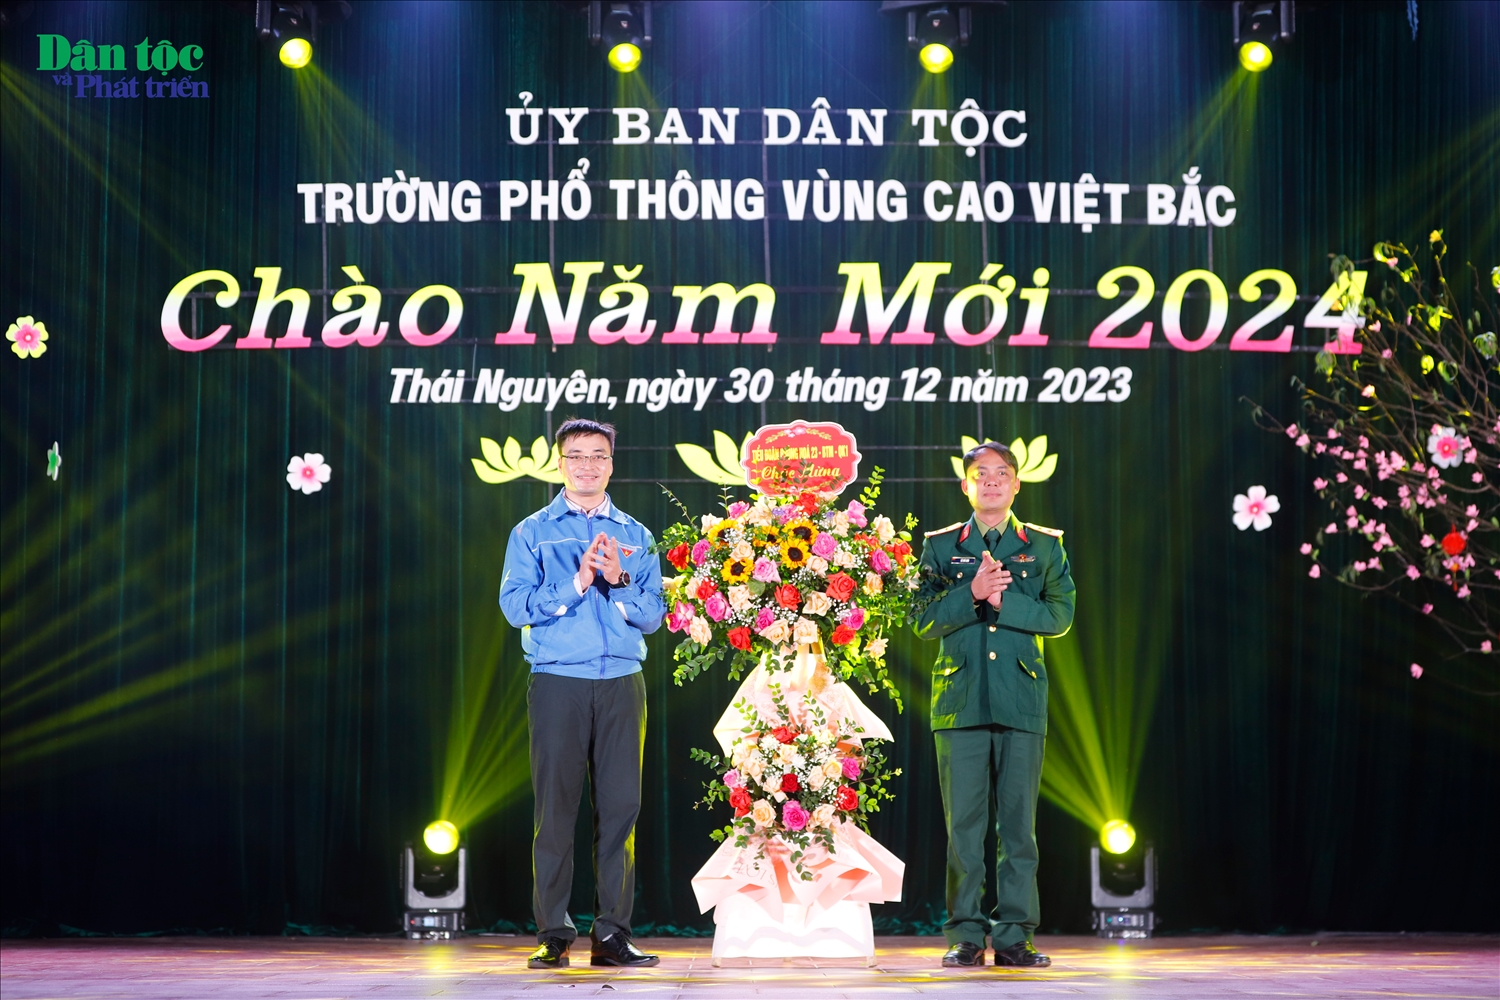 Trung tá Lê Chí Linh, Đại diện tiểu đoàn phòng hóa 23, Bộ Tham mưa Quân khu 1 trao tặng hoa và quà lưu niệm cho Ban Chấp hành Đoàn trường PT Vùng cao Việt Bắc